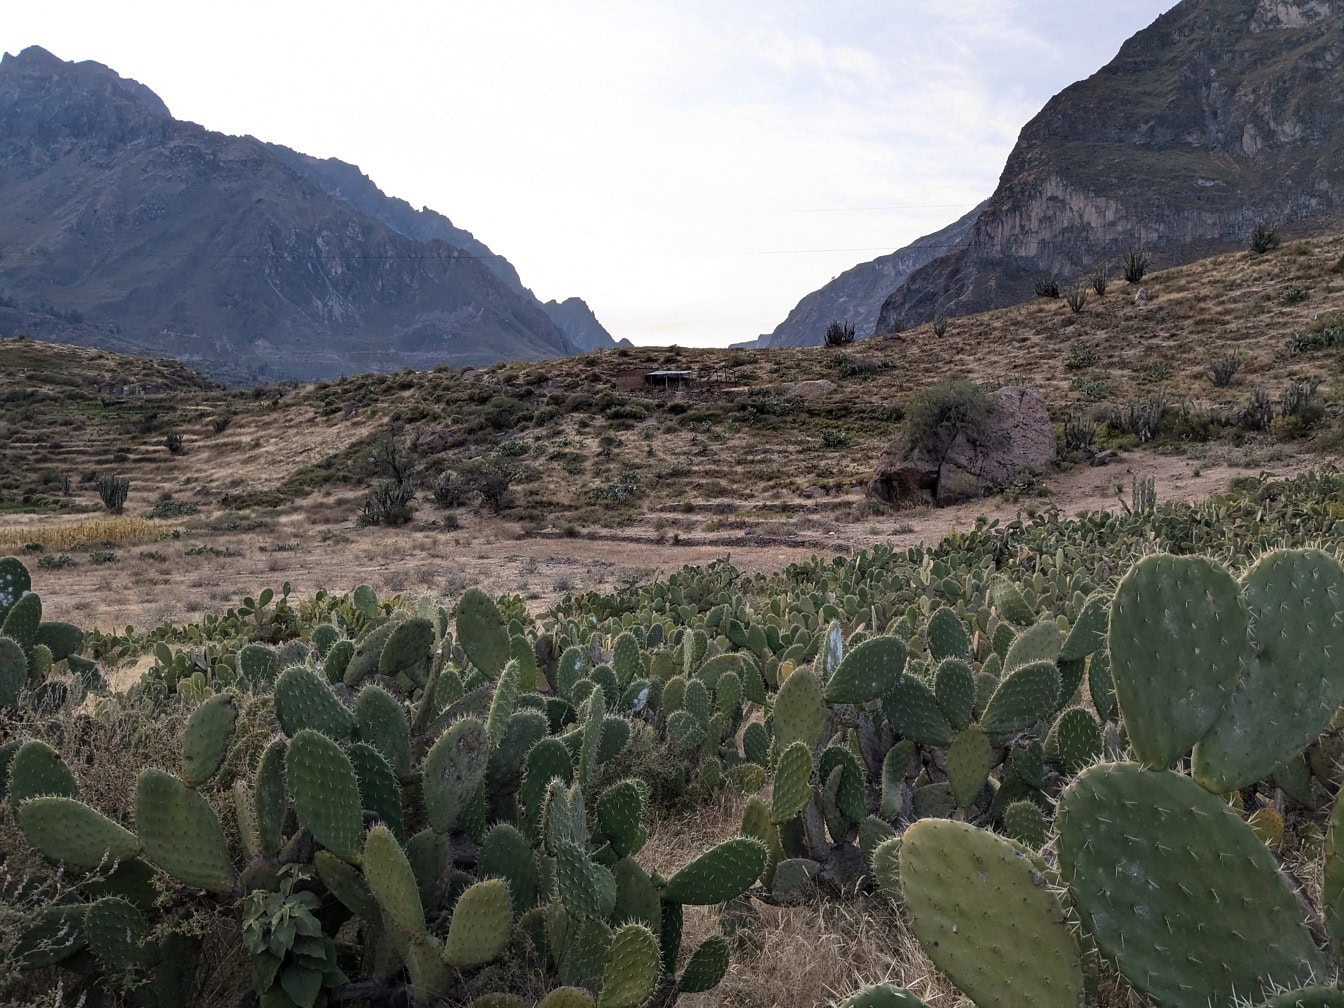 Peisaj de natură peruviană cu cactuși în prim-plan și cu munți în fundal